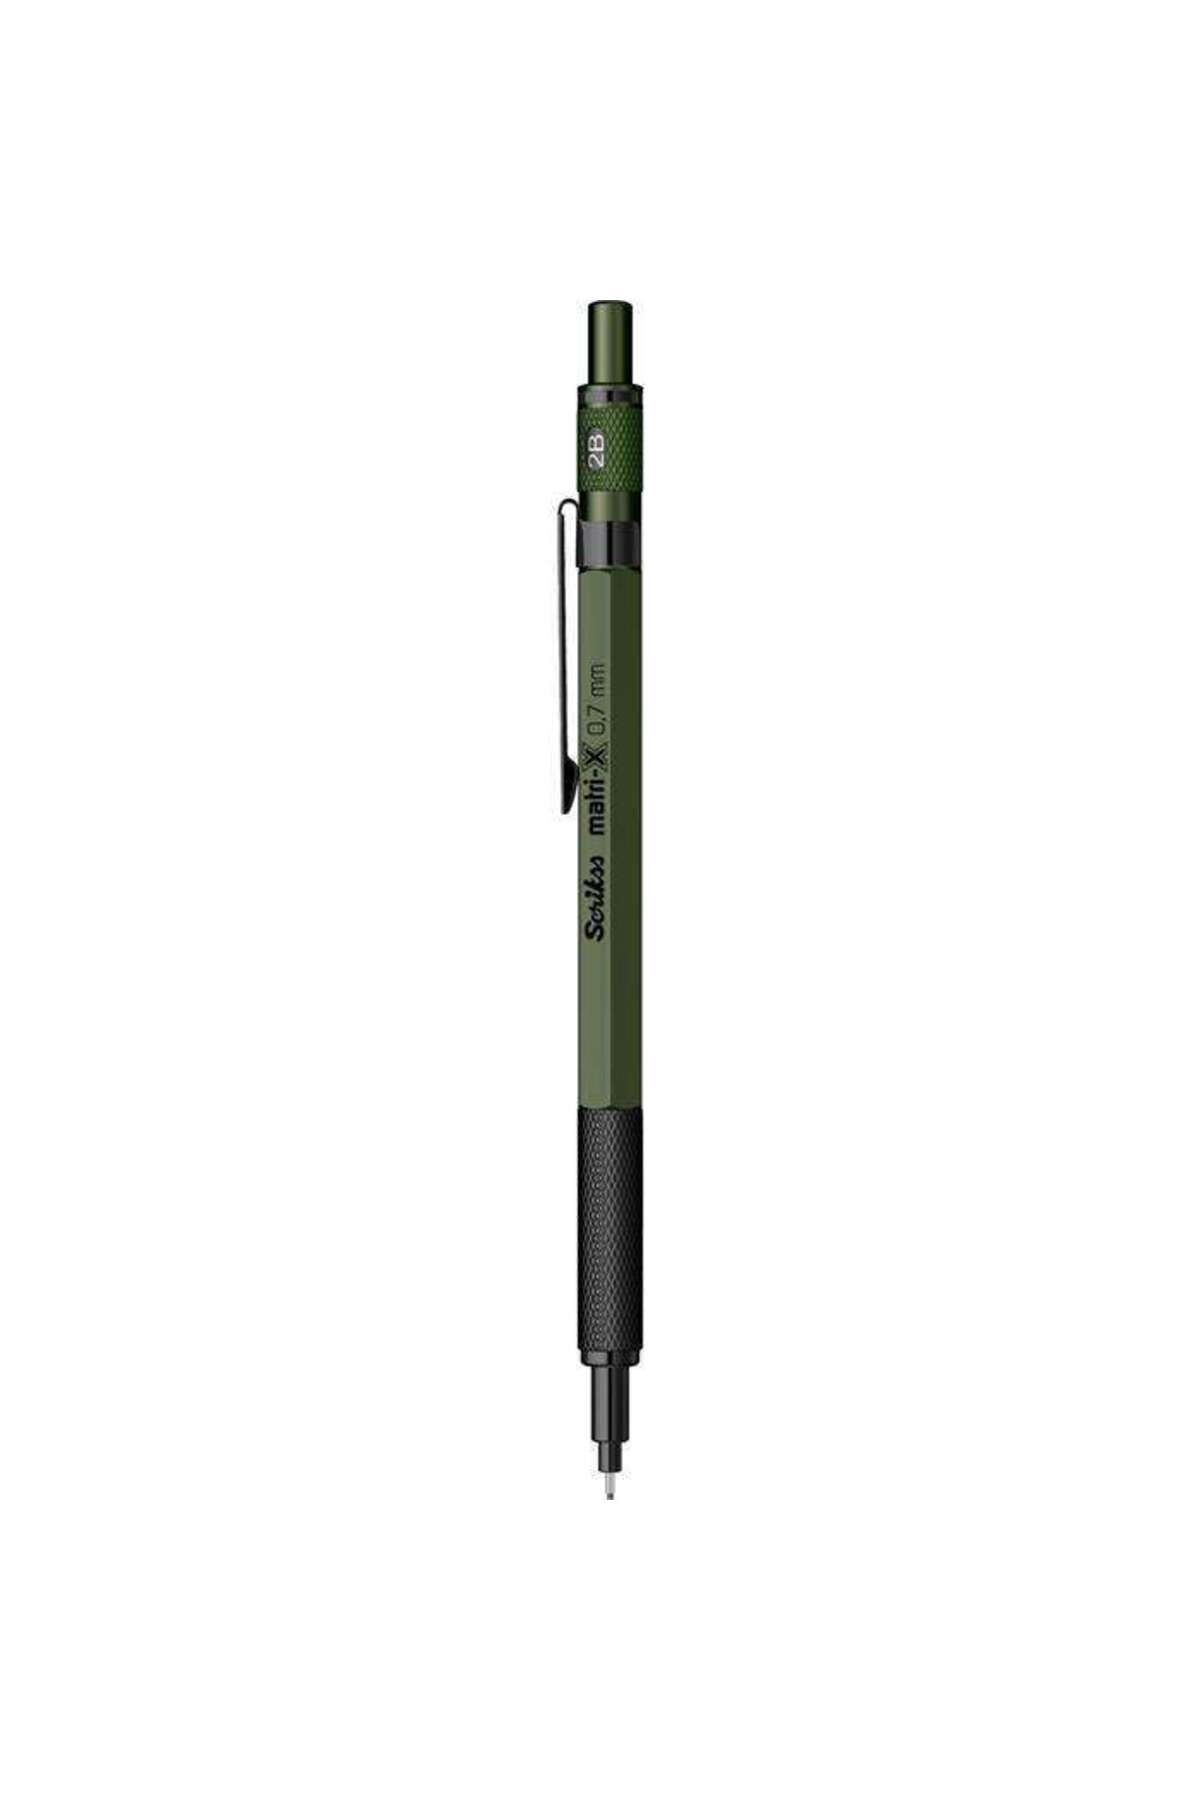 Scrikss Matri-x Mekanik Kurşun Kalem 0,7mm Haki Yeşili